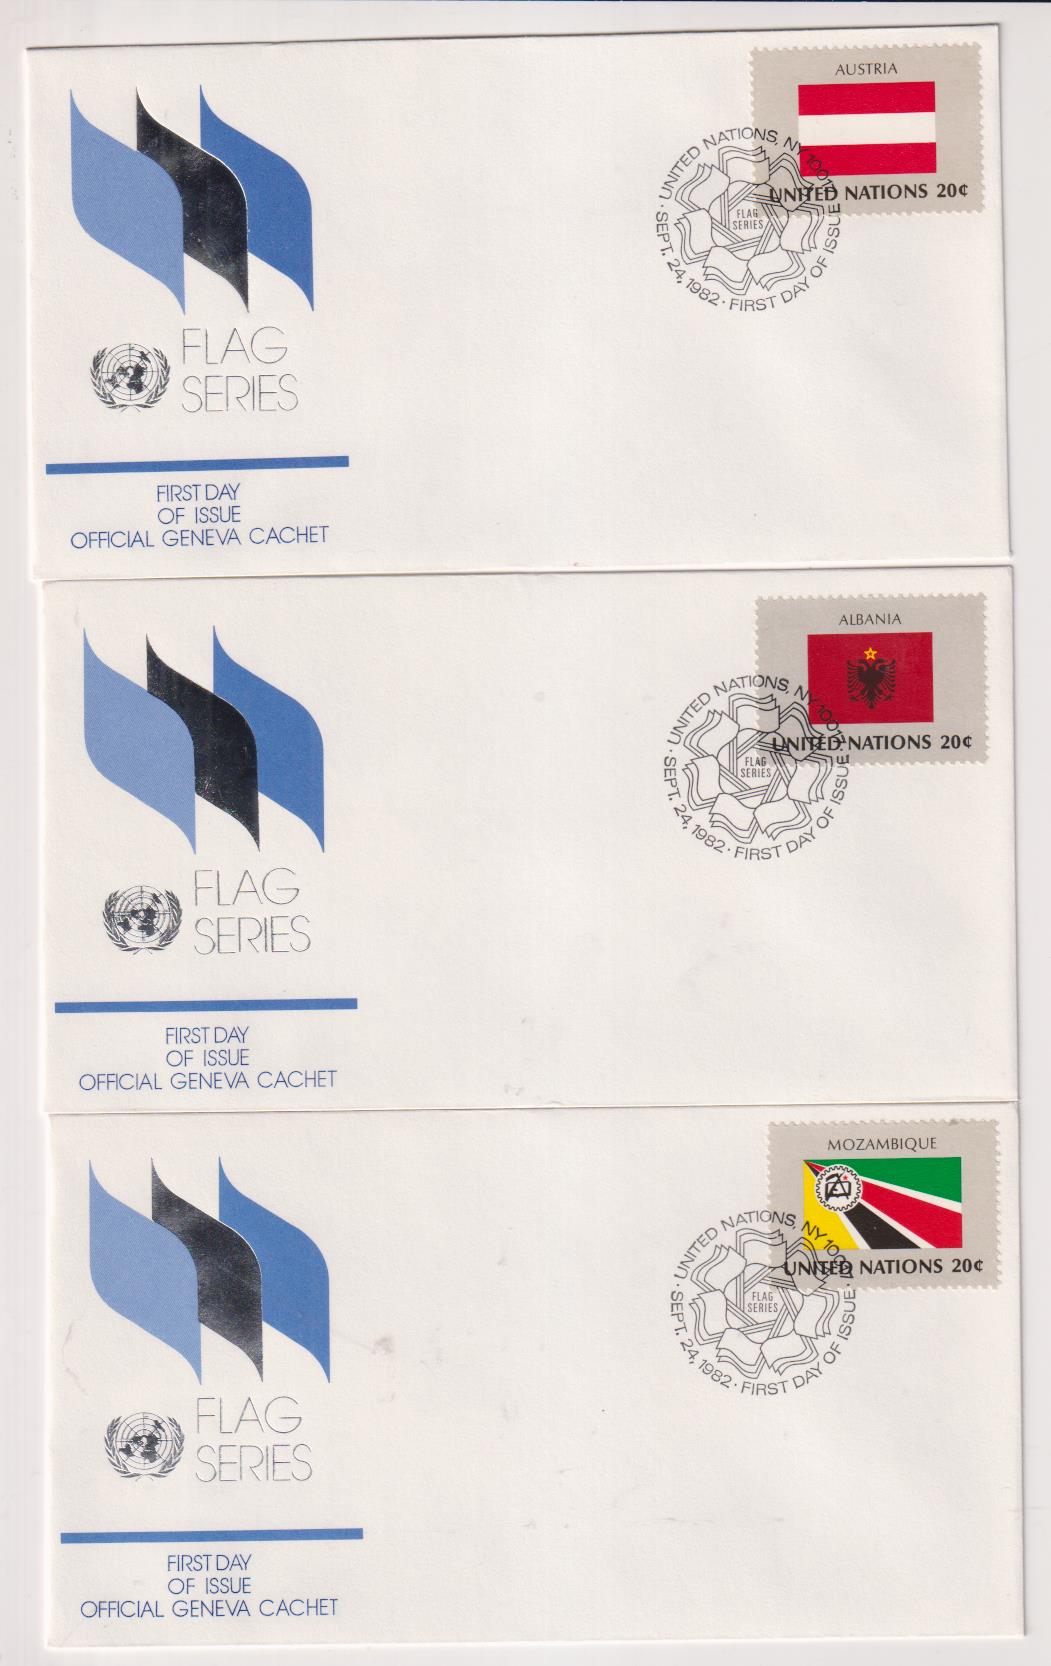 Naciones Unidas. Serie Banderas. 3 Sobres Primer Día: Austria, Albania y mozambique 1982